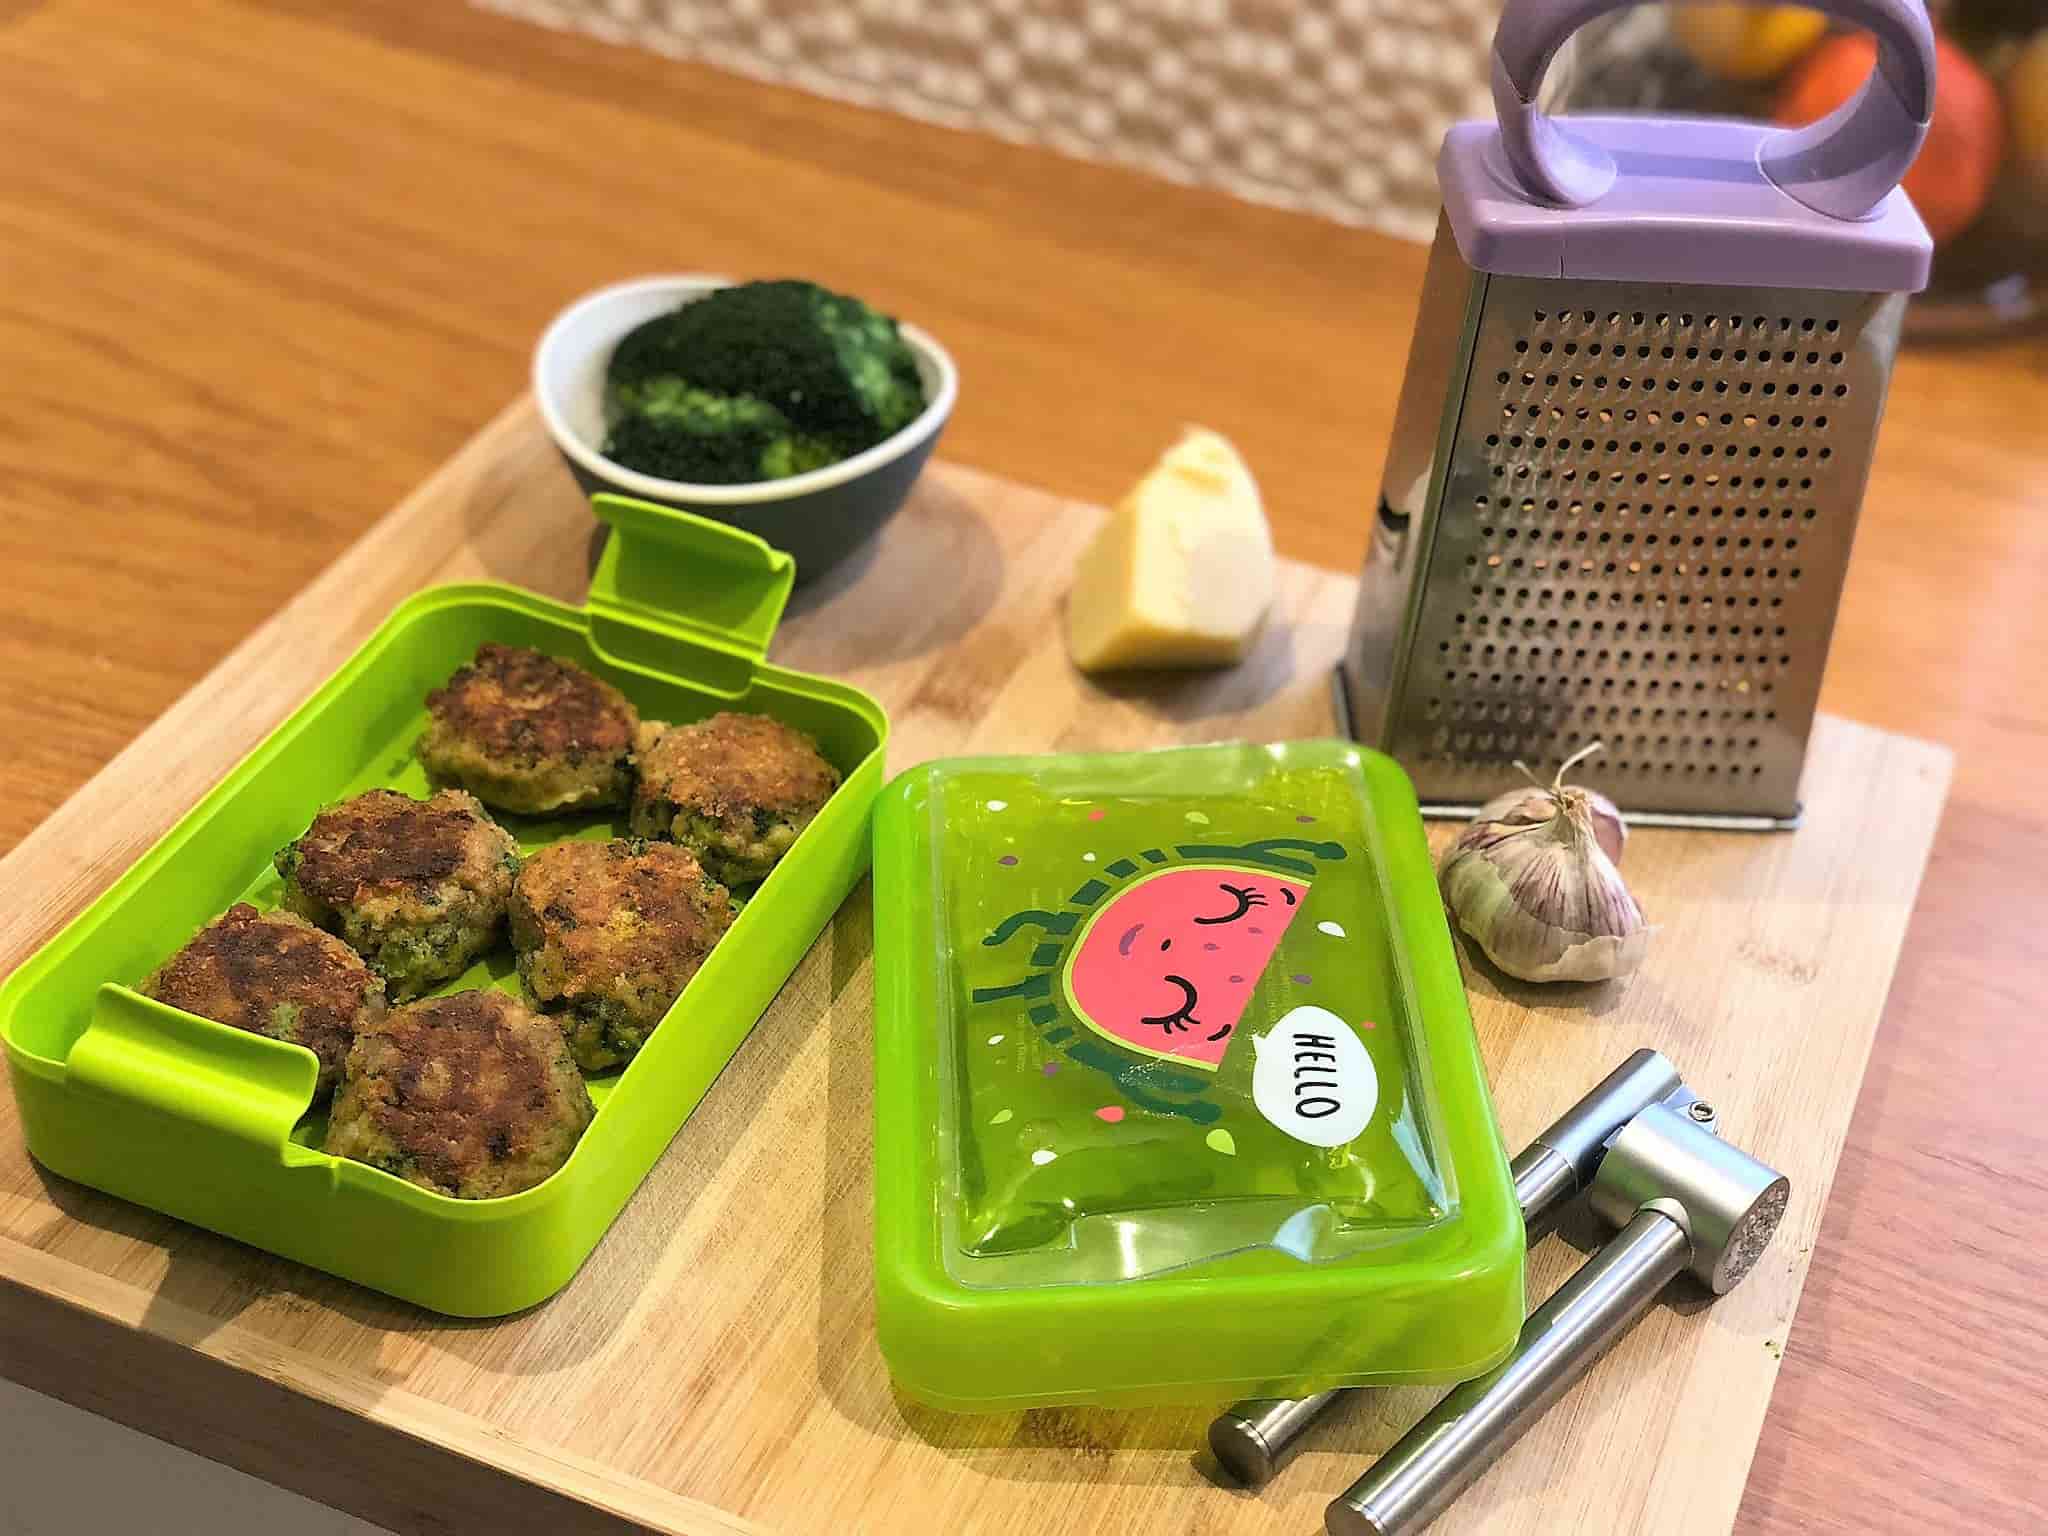 Kotlety brokułowe z pieczarkami do lunch boxa łatwe